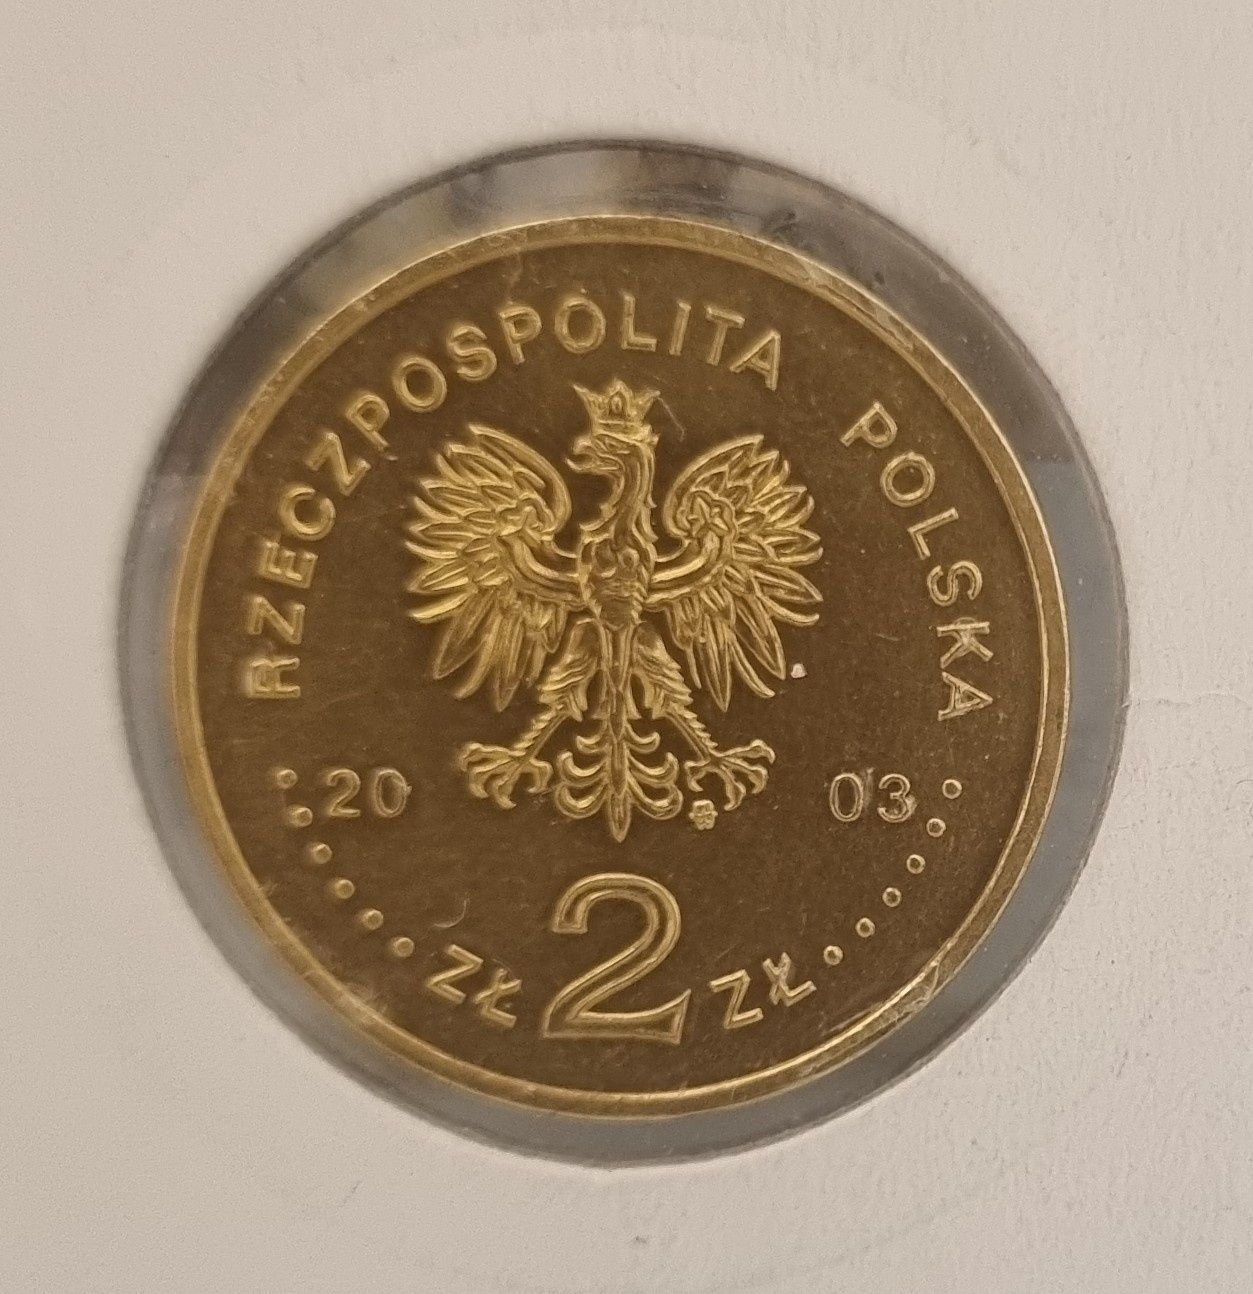 Stare monety / moneta 2 zł NG 2003 r.